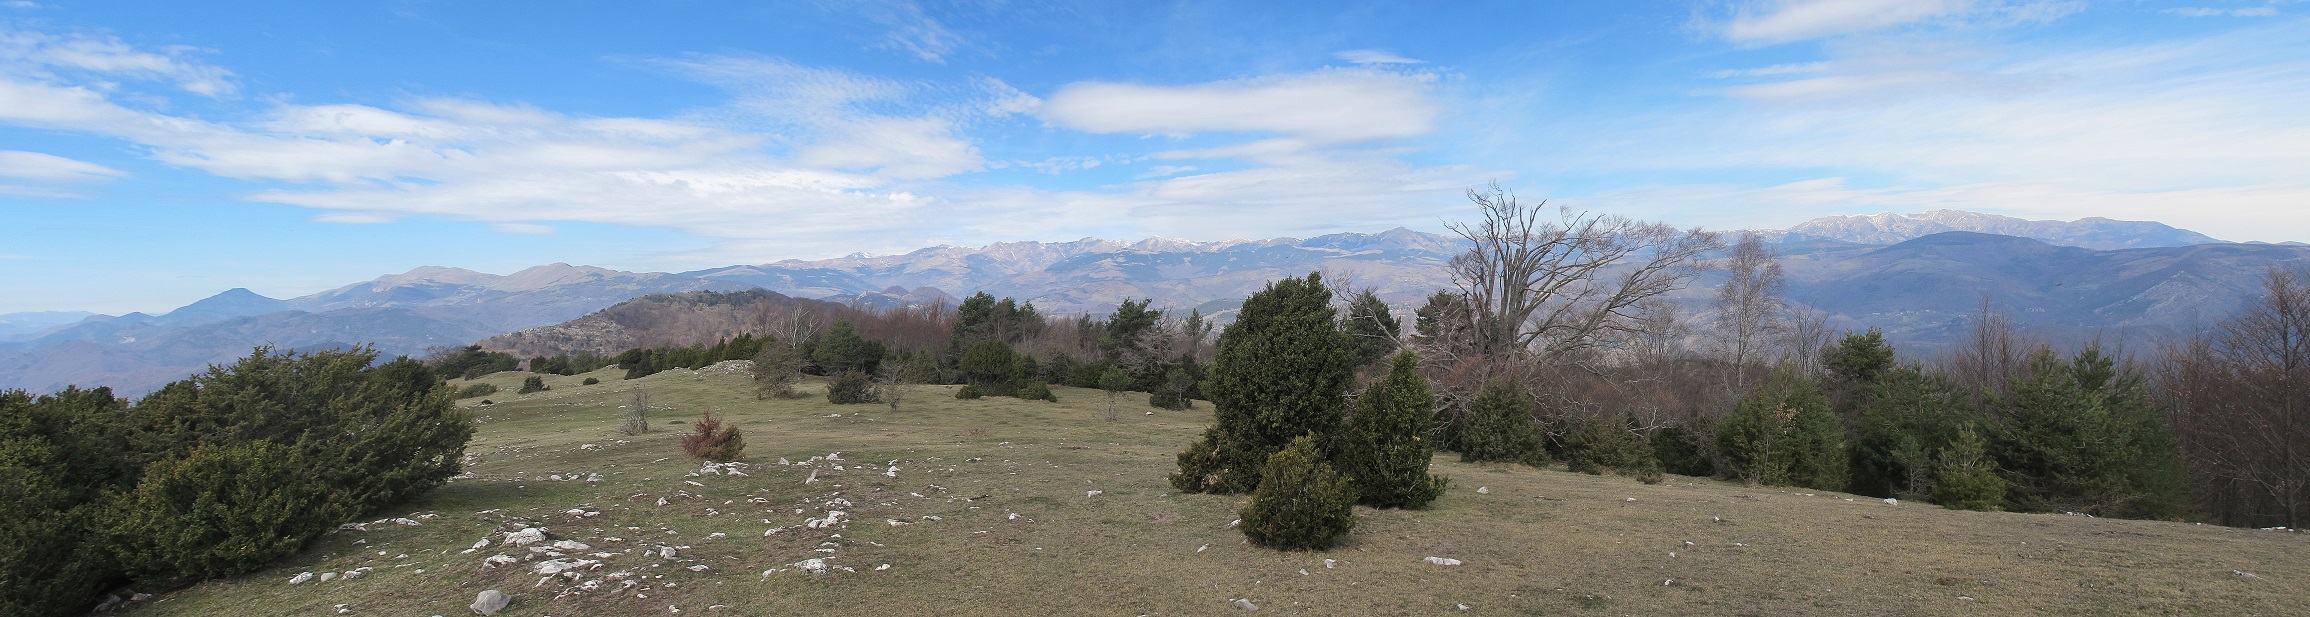 Panorama del Pirineu Oriental, des del Tga fins al Canigó, sense neu!